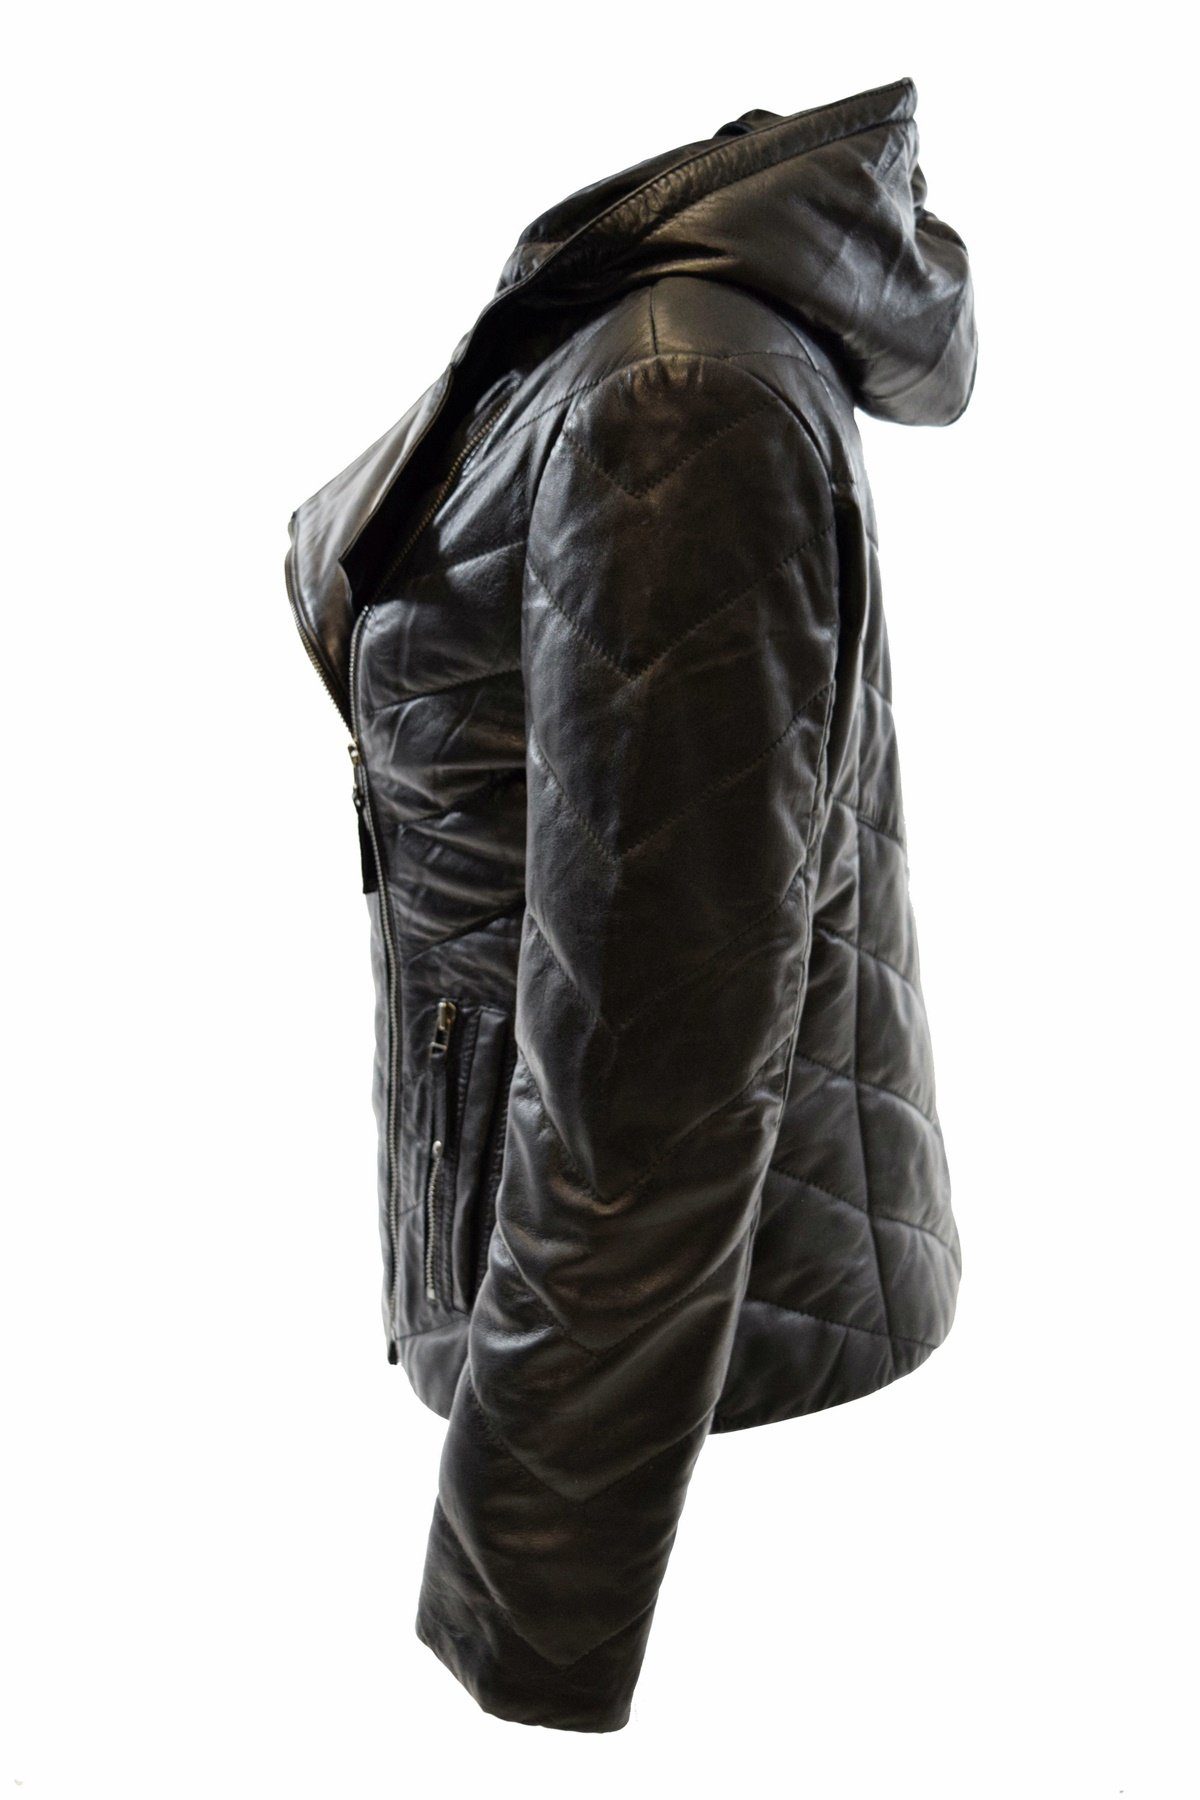 Elda Leather weichem Schwarz, Braun mit Zimmert Kapuze aus Leder Stepp-Lederjacke Lederjacke